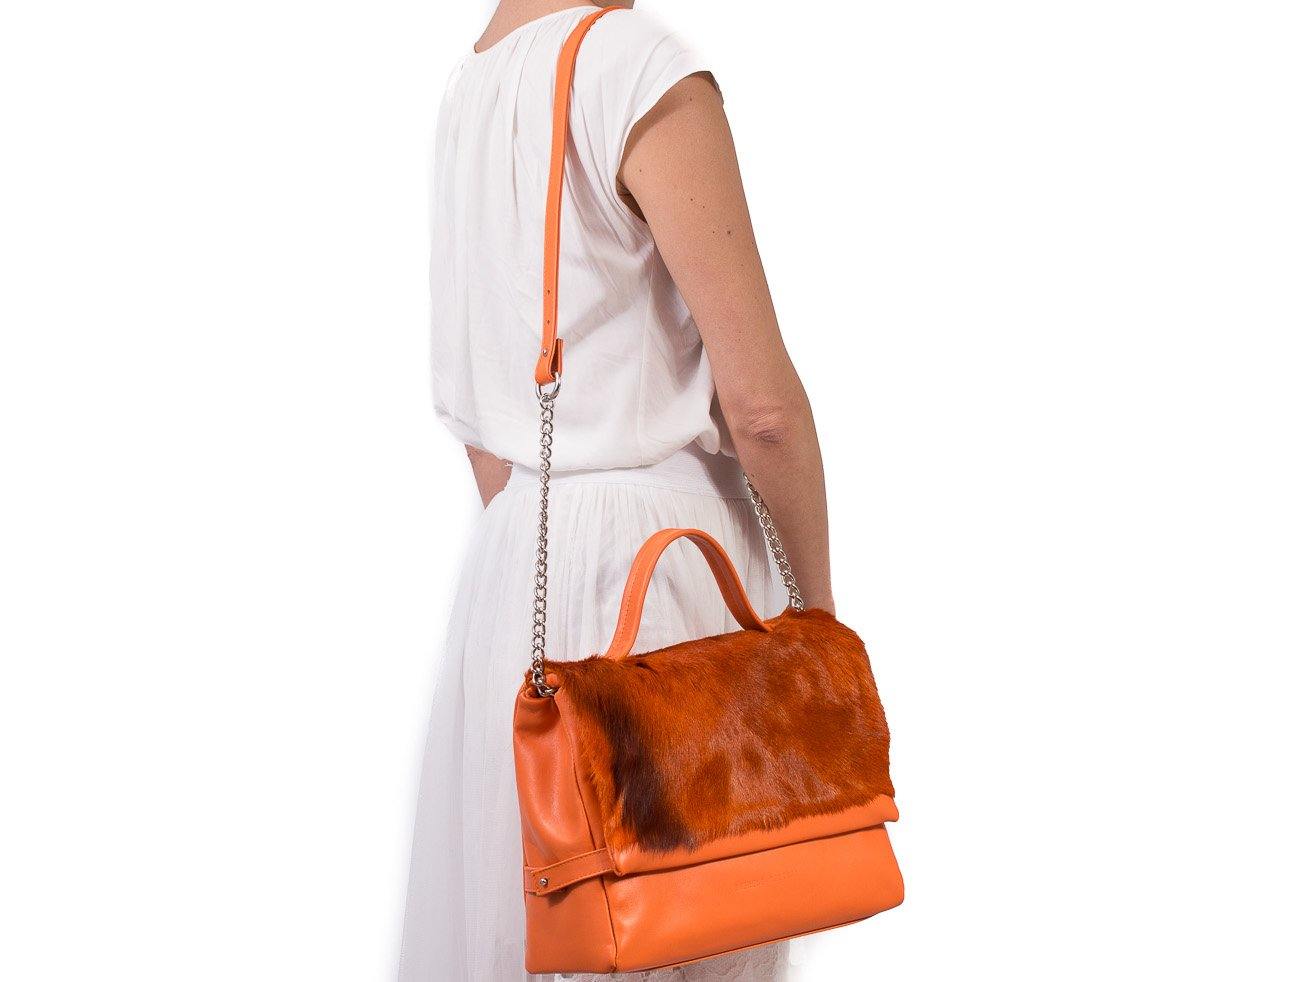 sherene melinda springbok hair-on-hide orange leather smith tote bag stripe context